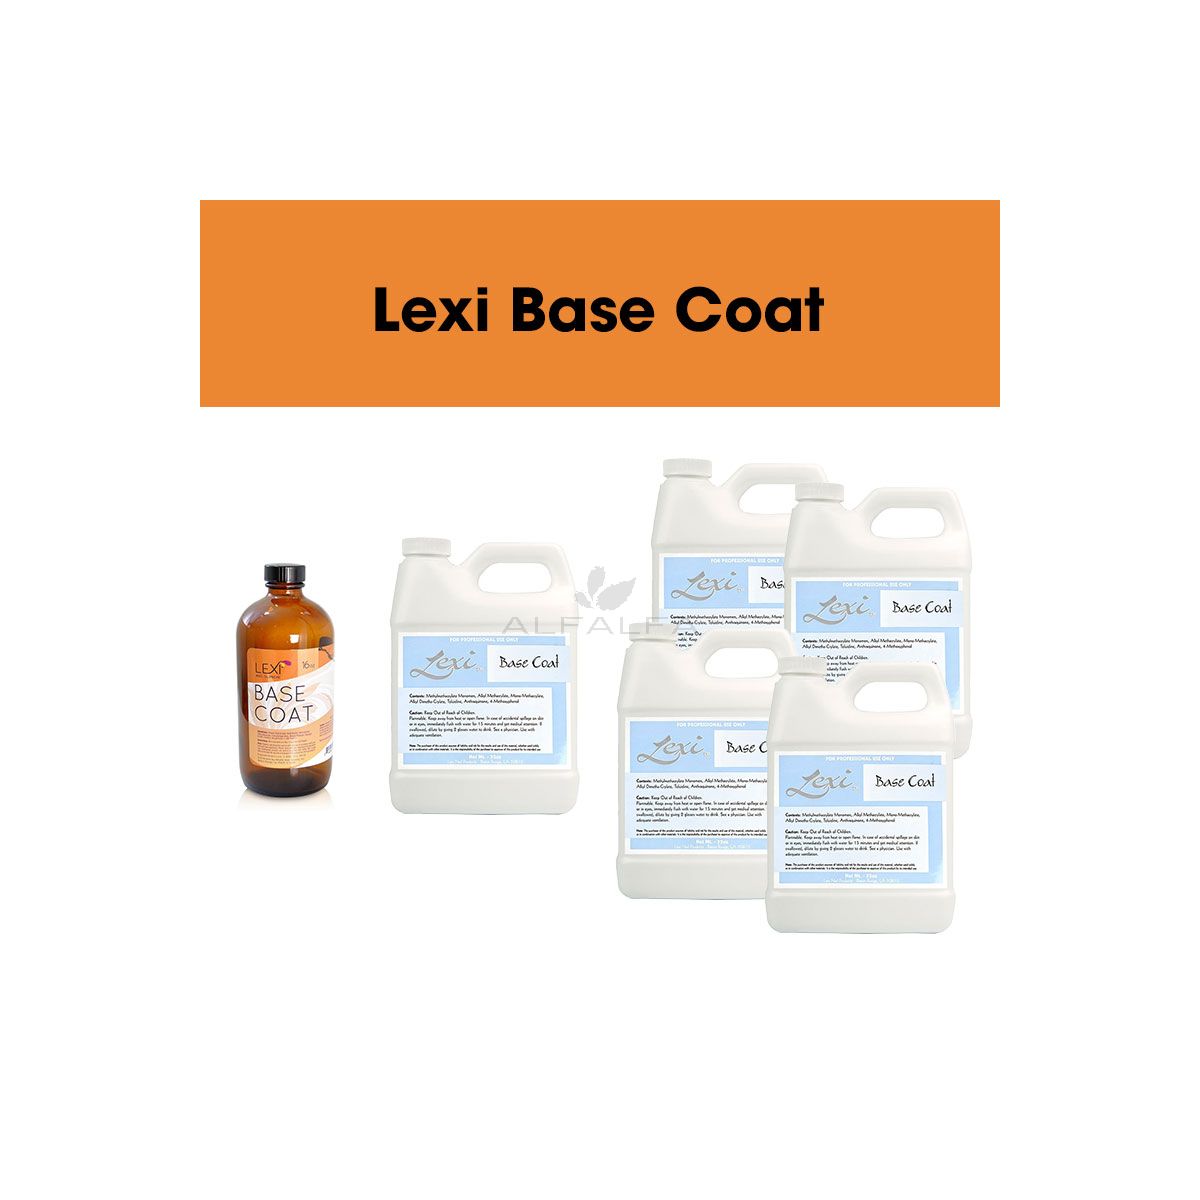 Lexi Base Coat